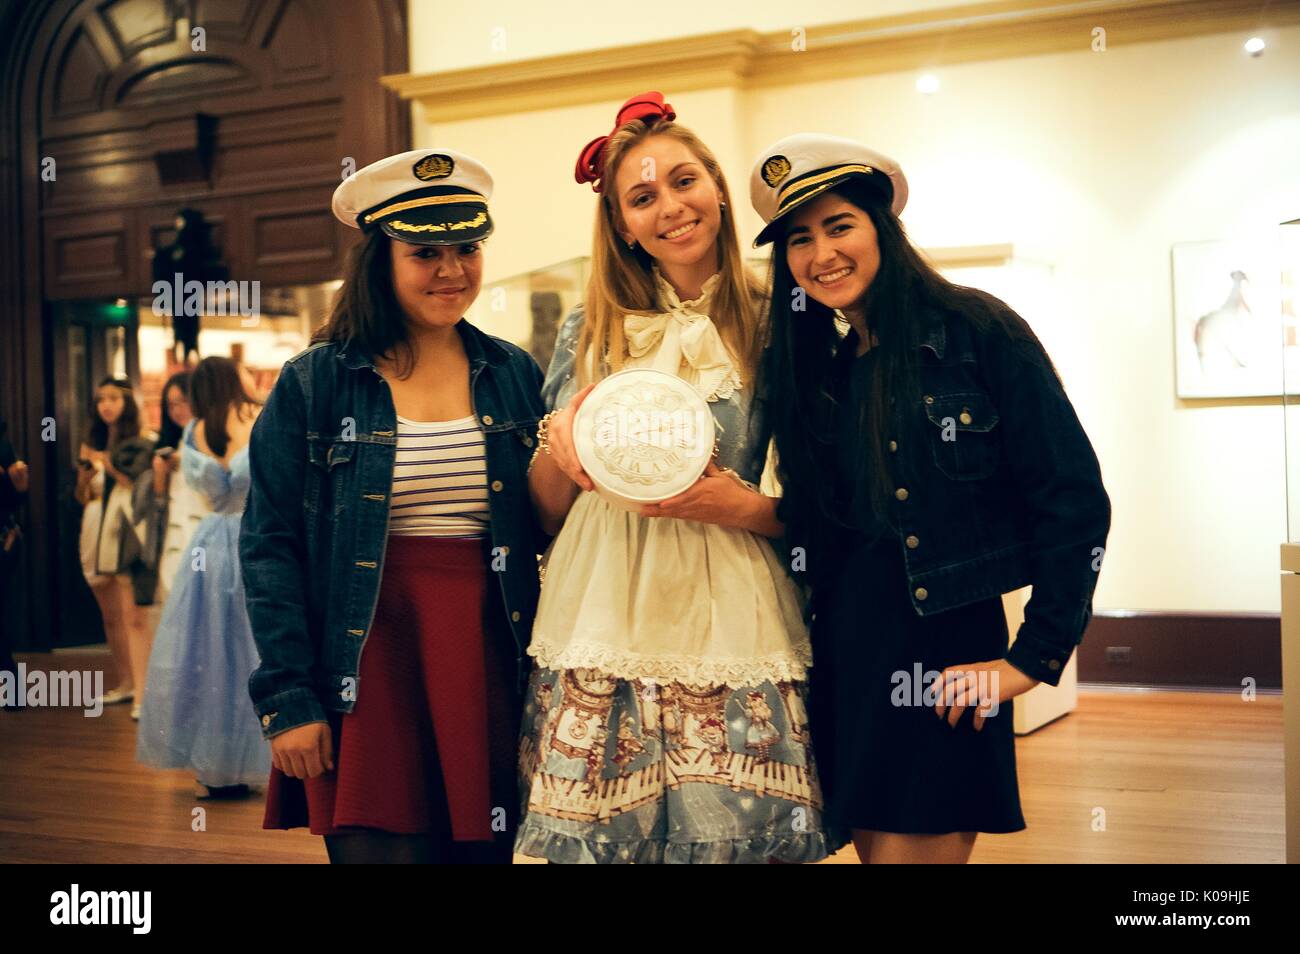 Trois étudiants posent pour une photo, deux filles sur les extrémités sont habillés comme des marins avec un chapeau de marin et la jeune fille dans le milieu est habillé comme Alice au Pays des merveilles et est titulaire d'un réveil, 2015. Avec la permission de Eric Chen. Banque D'Images